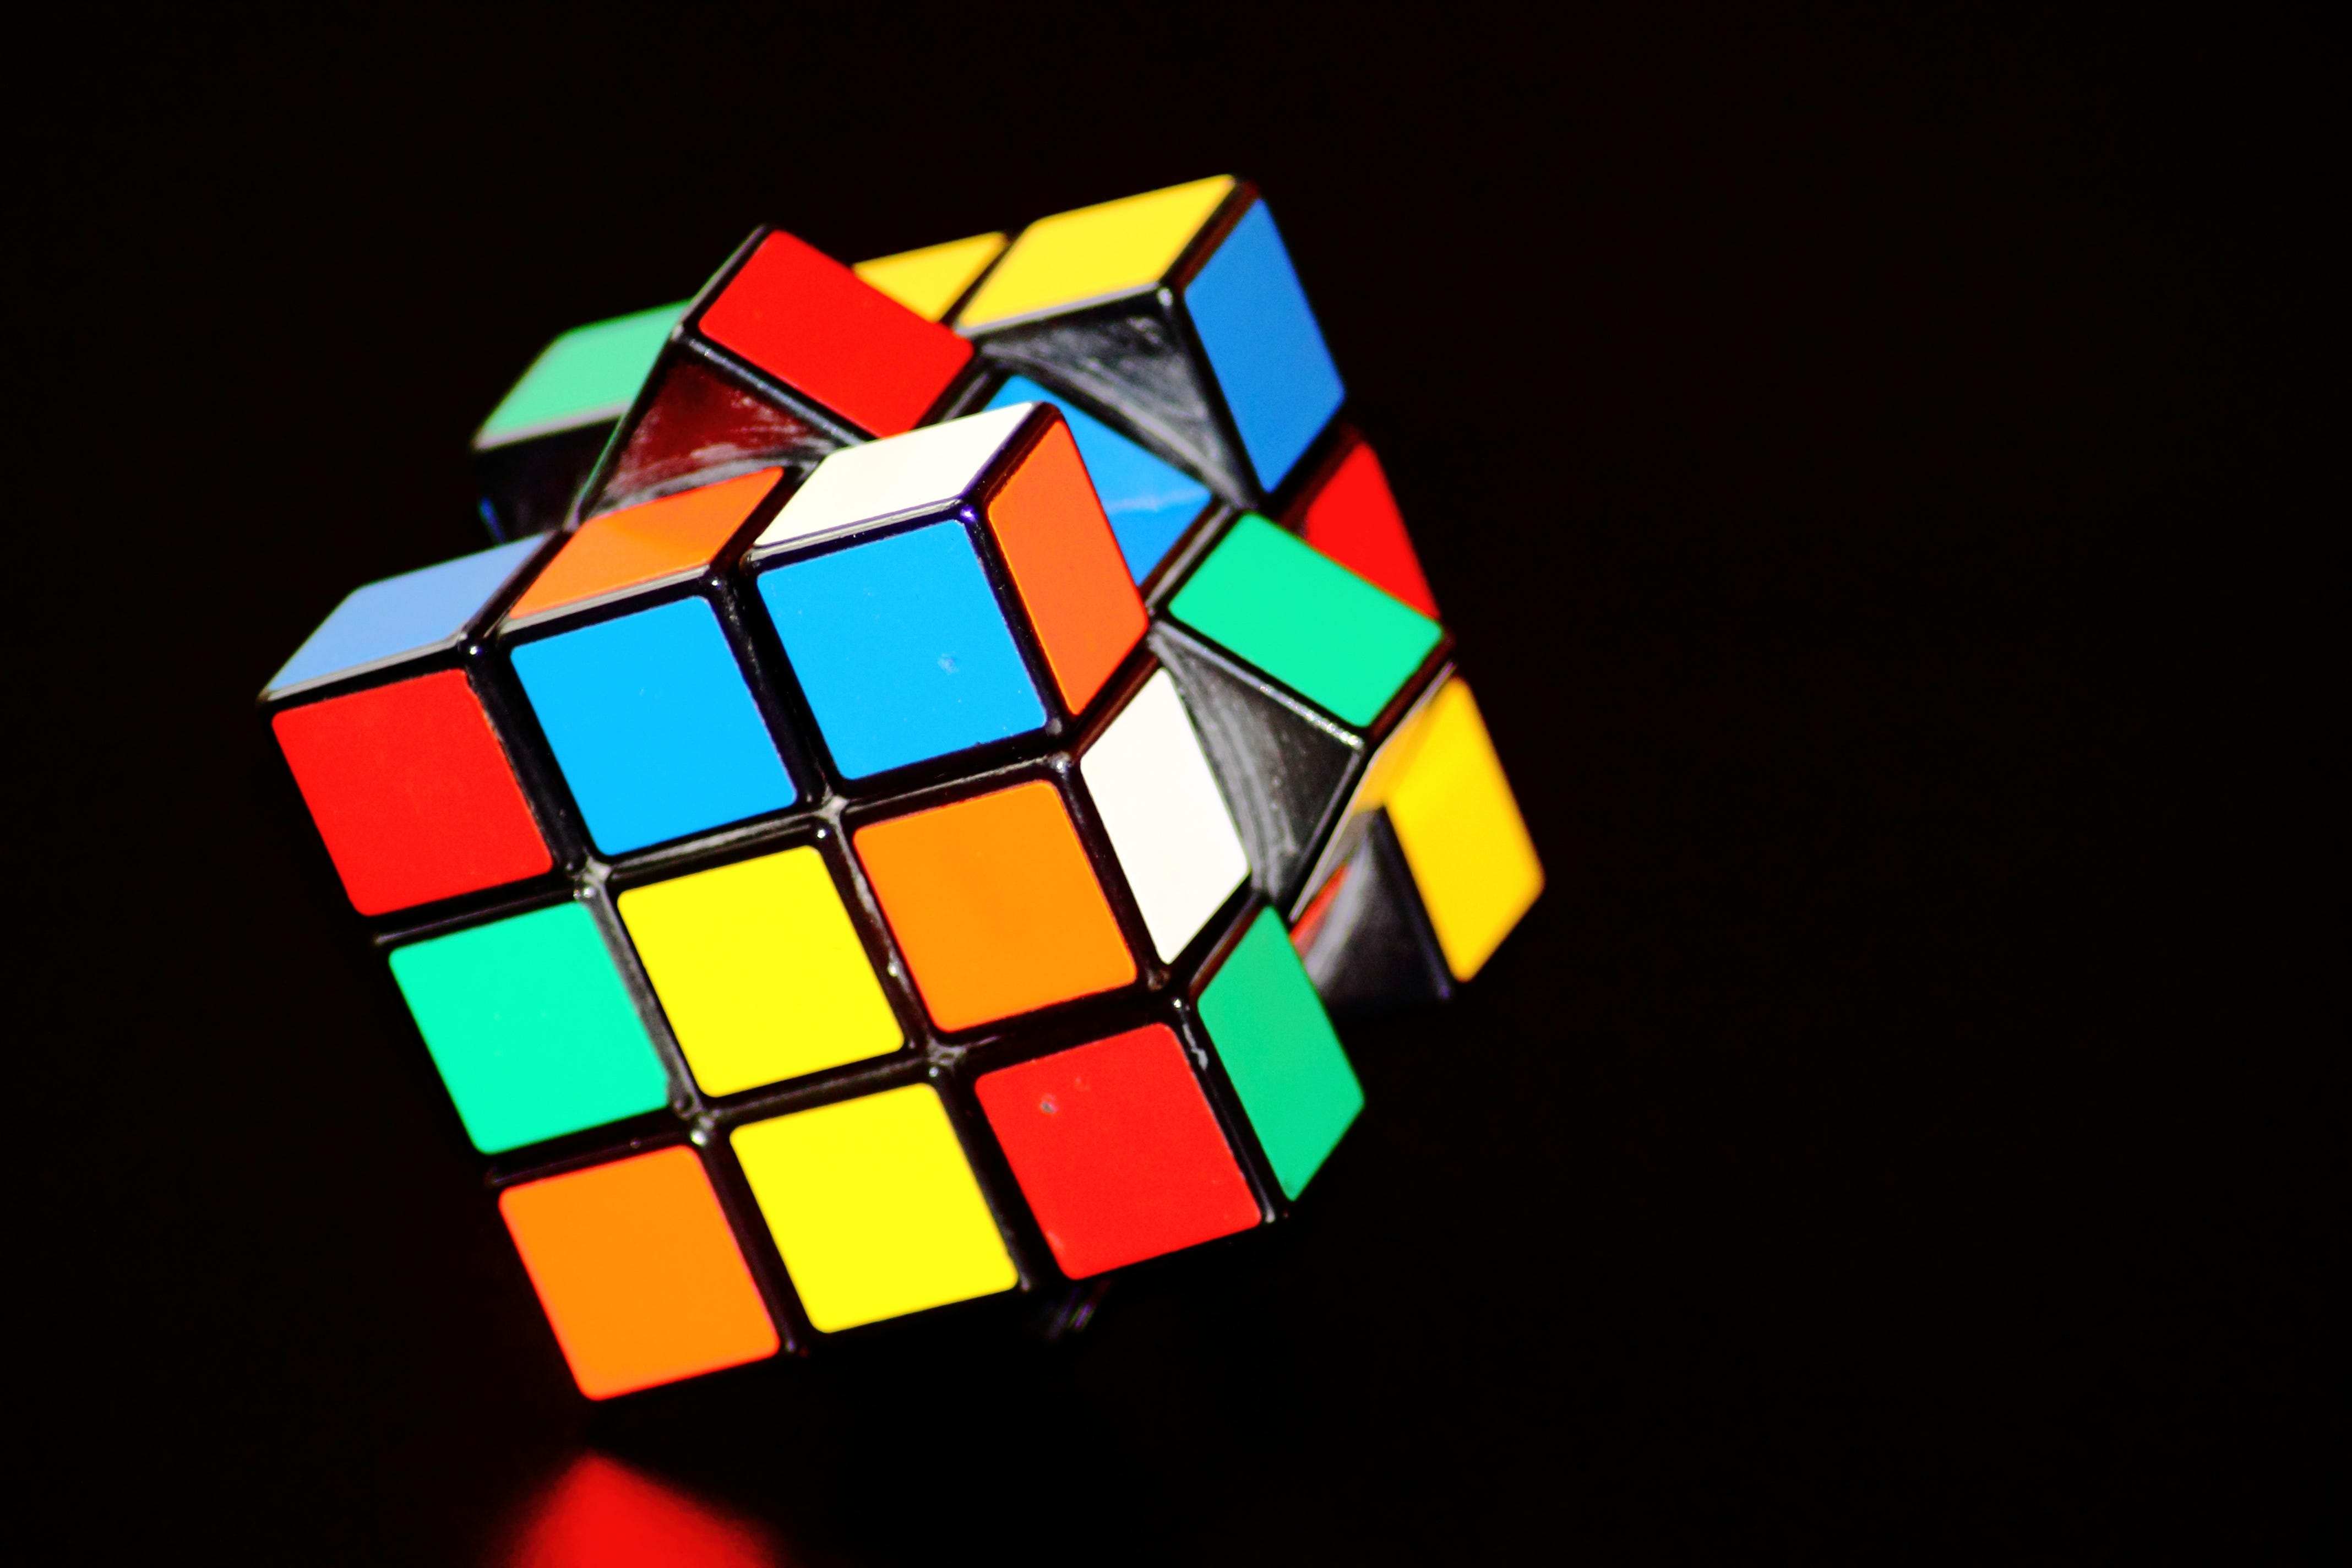 Tutorial de como resolver o cubo mágico passo 4 (de 7). Passo 4